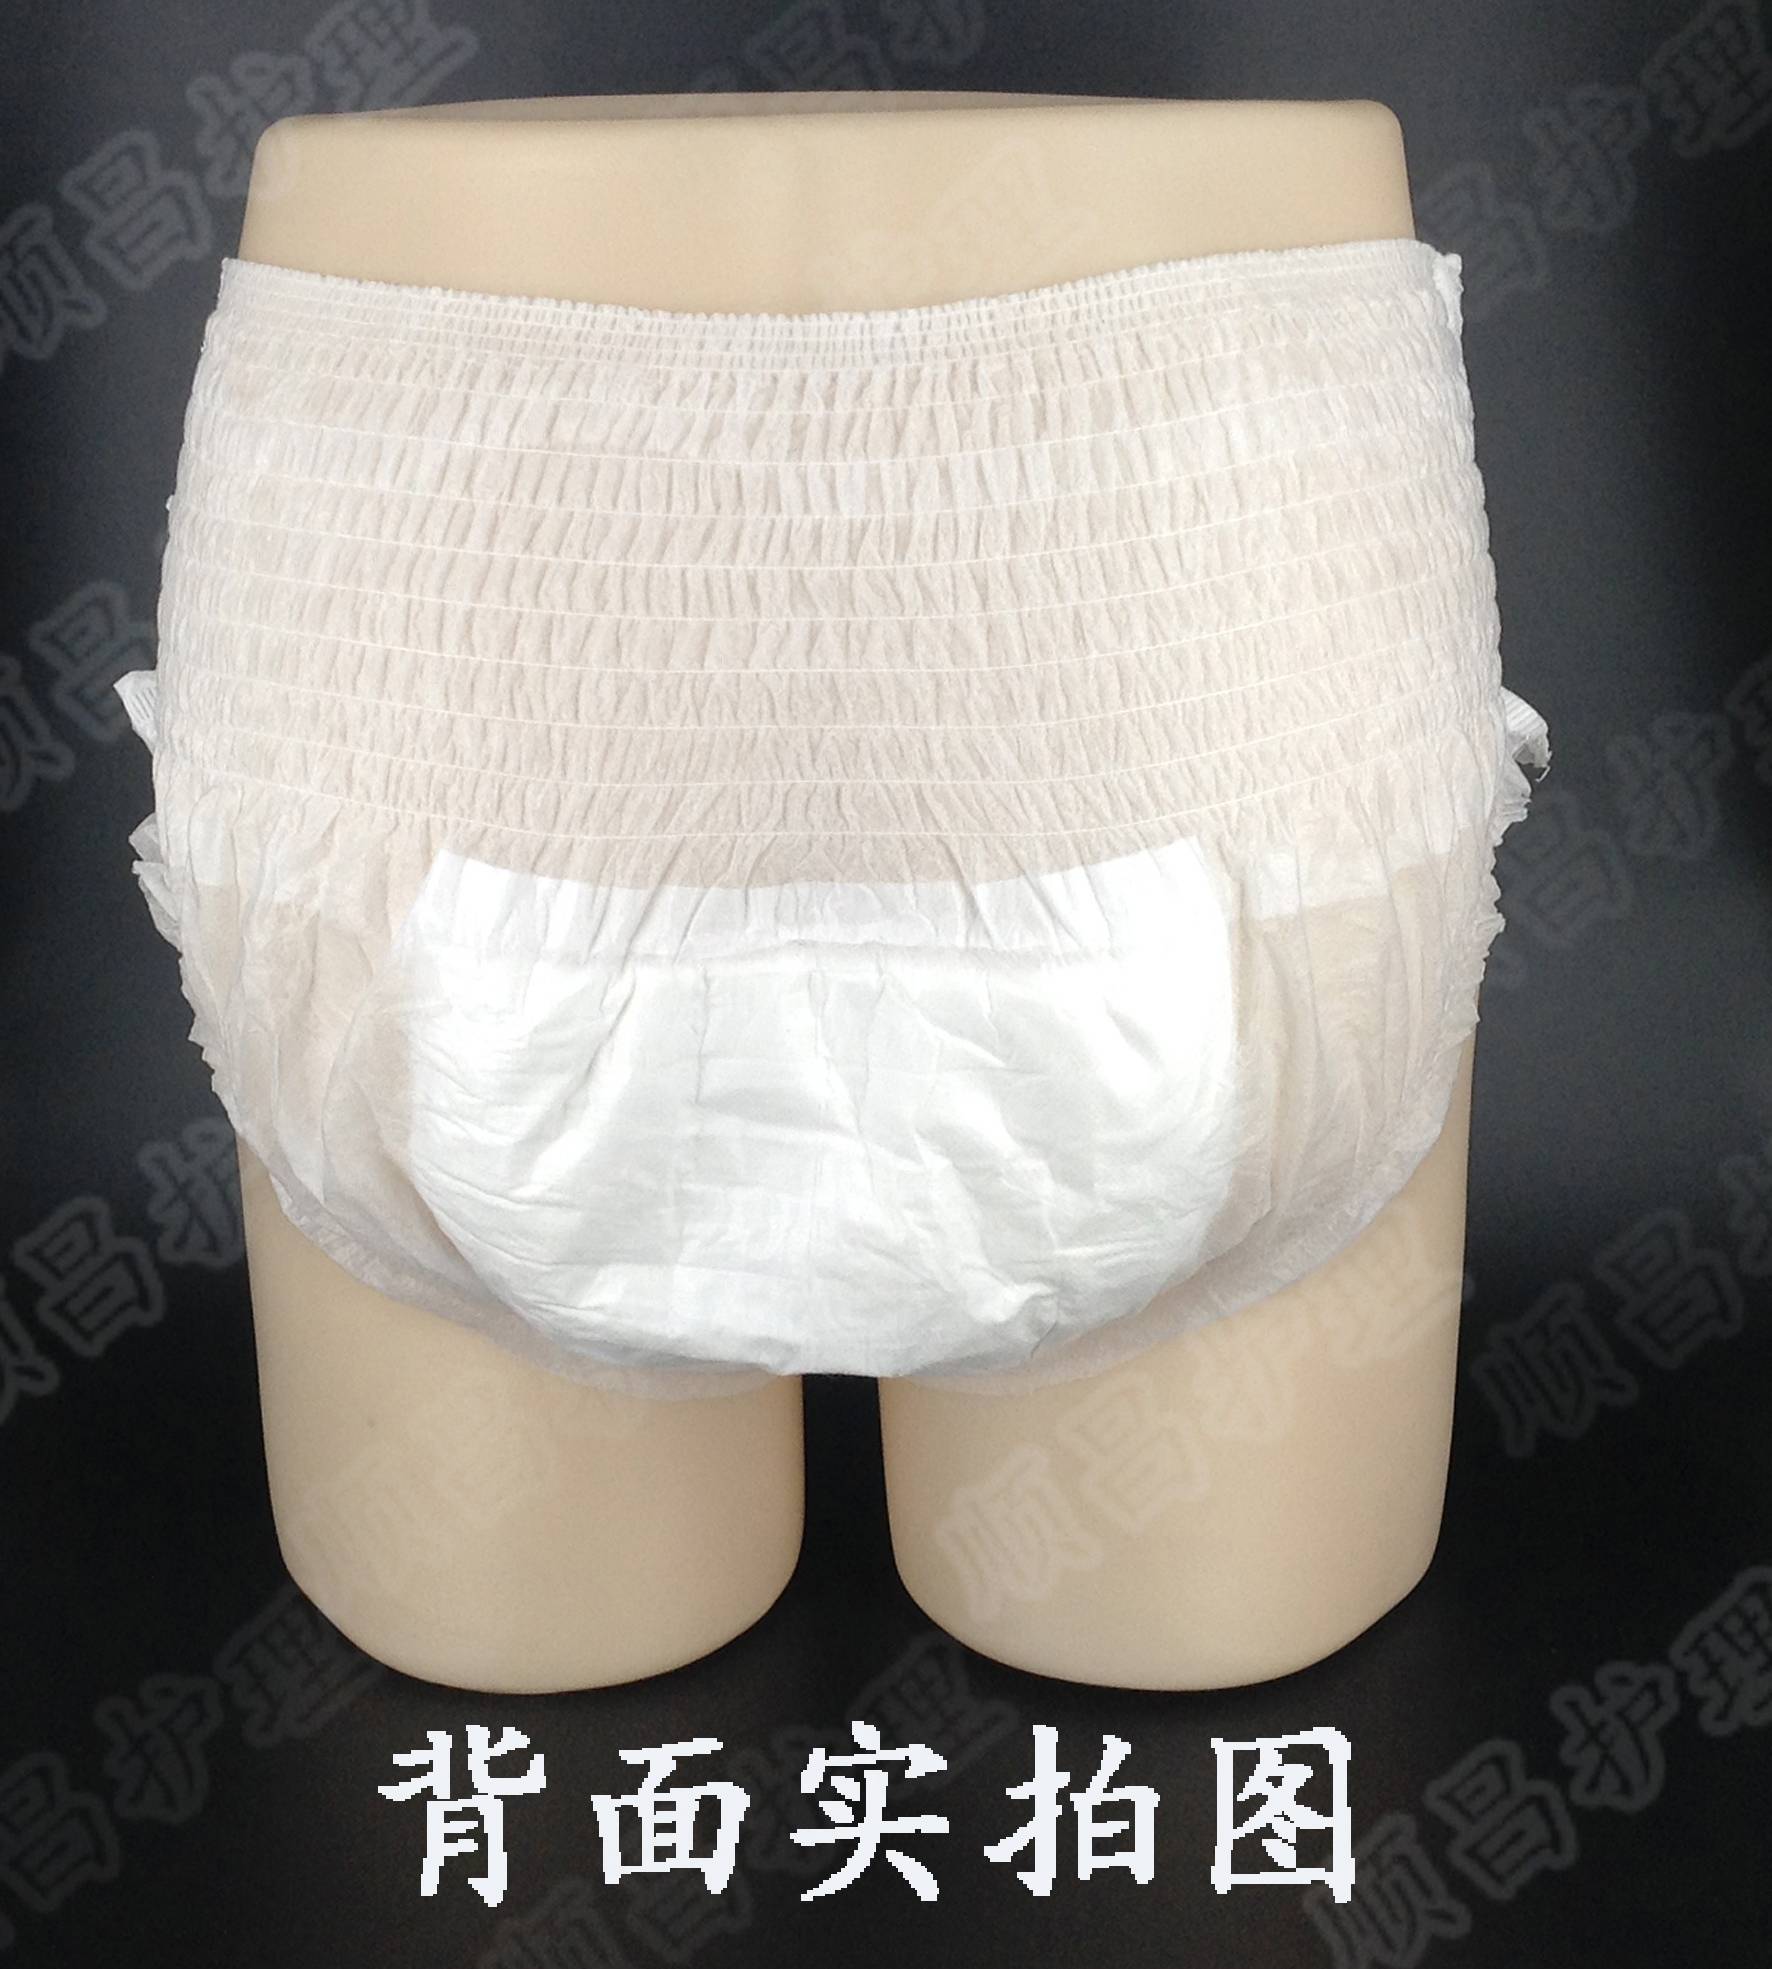 老顺昌成人内裤式可穿型纸尿裤 l 大号 拉拉裤/三角裤/一次性短裤